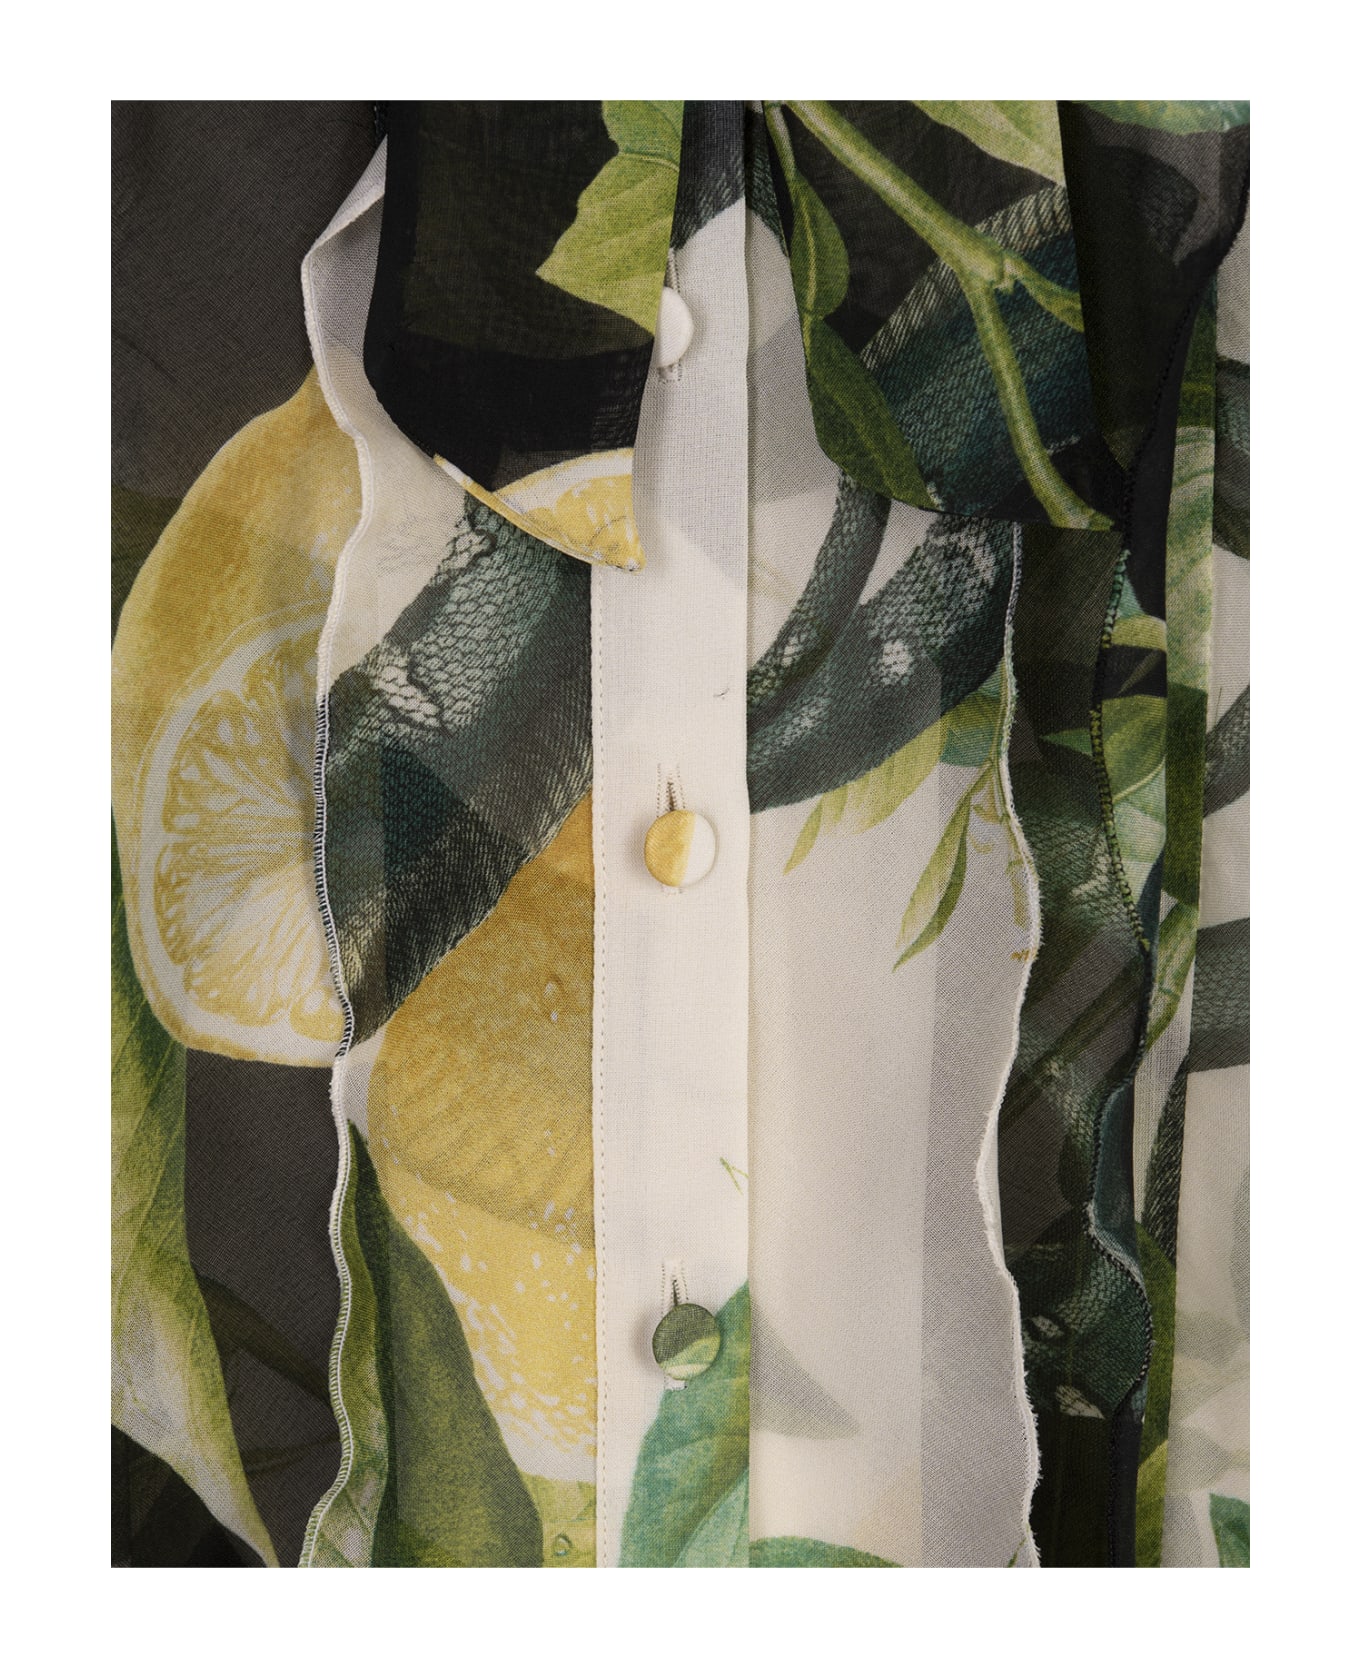 Roberto Cavalli Ivory Shirt With Lemons Print - White ブラウス